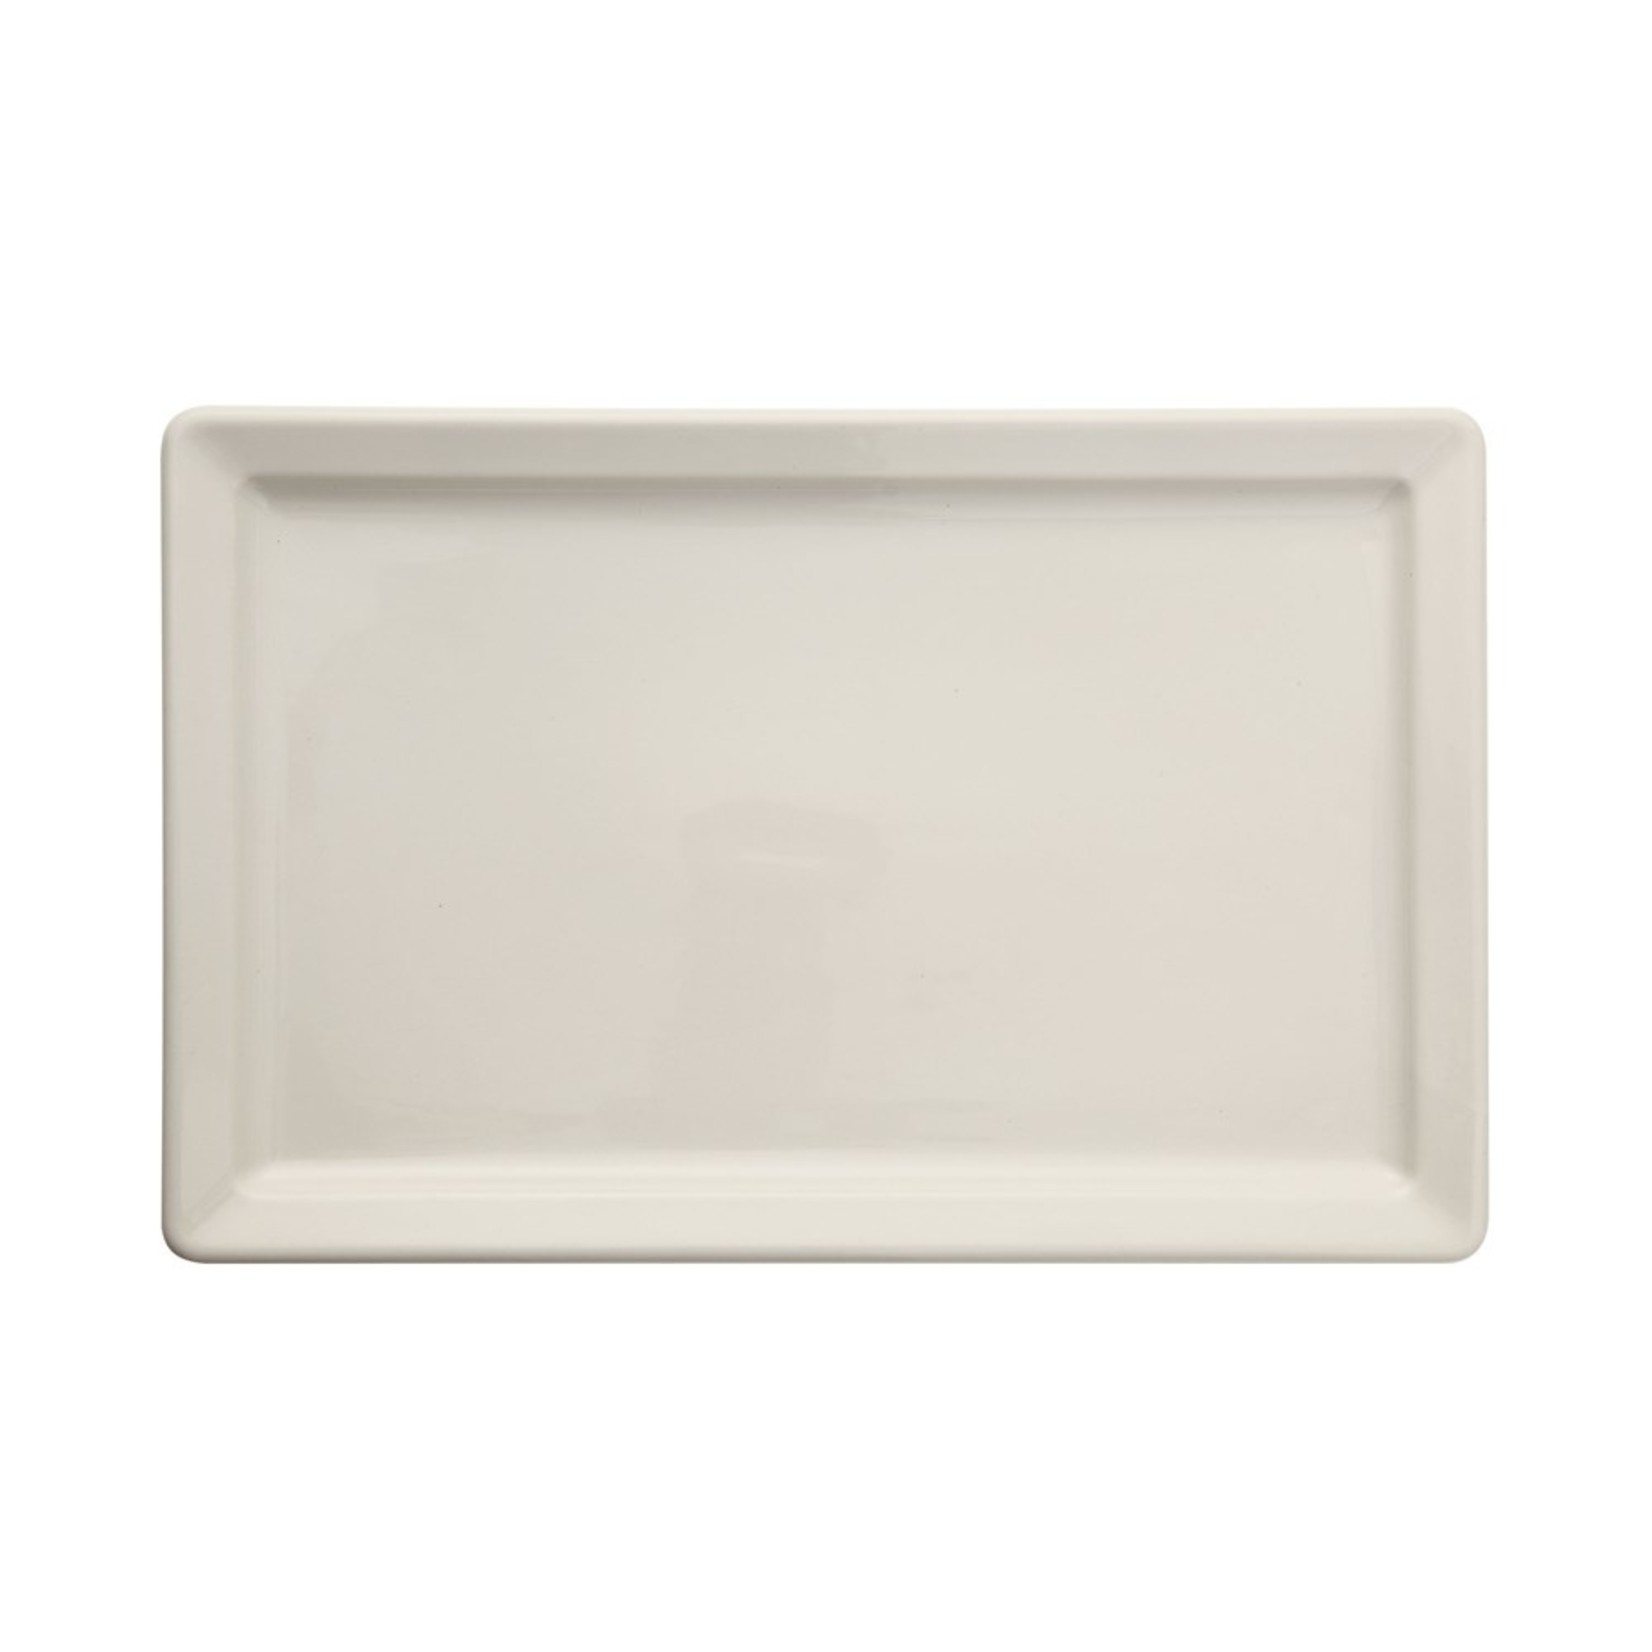 Stoneware Vintage Reproduction Platter, Antique White